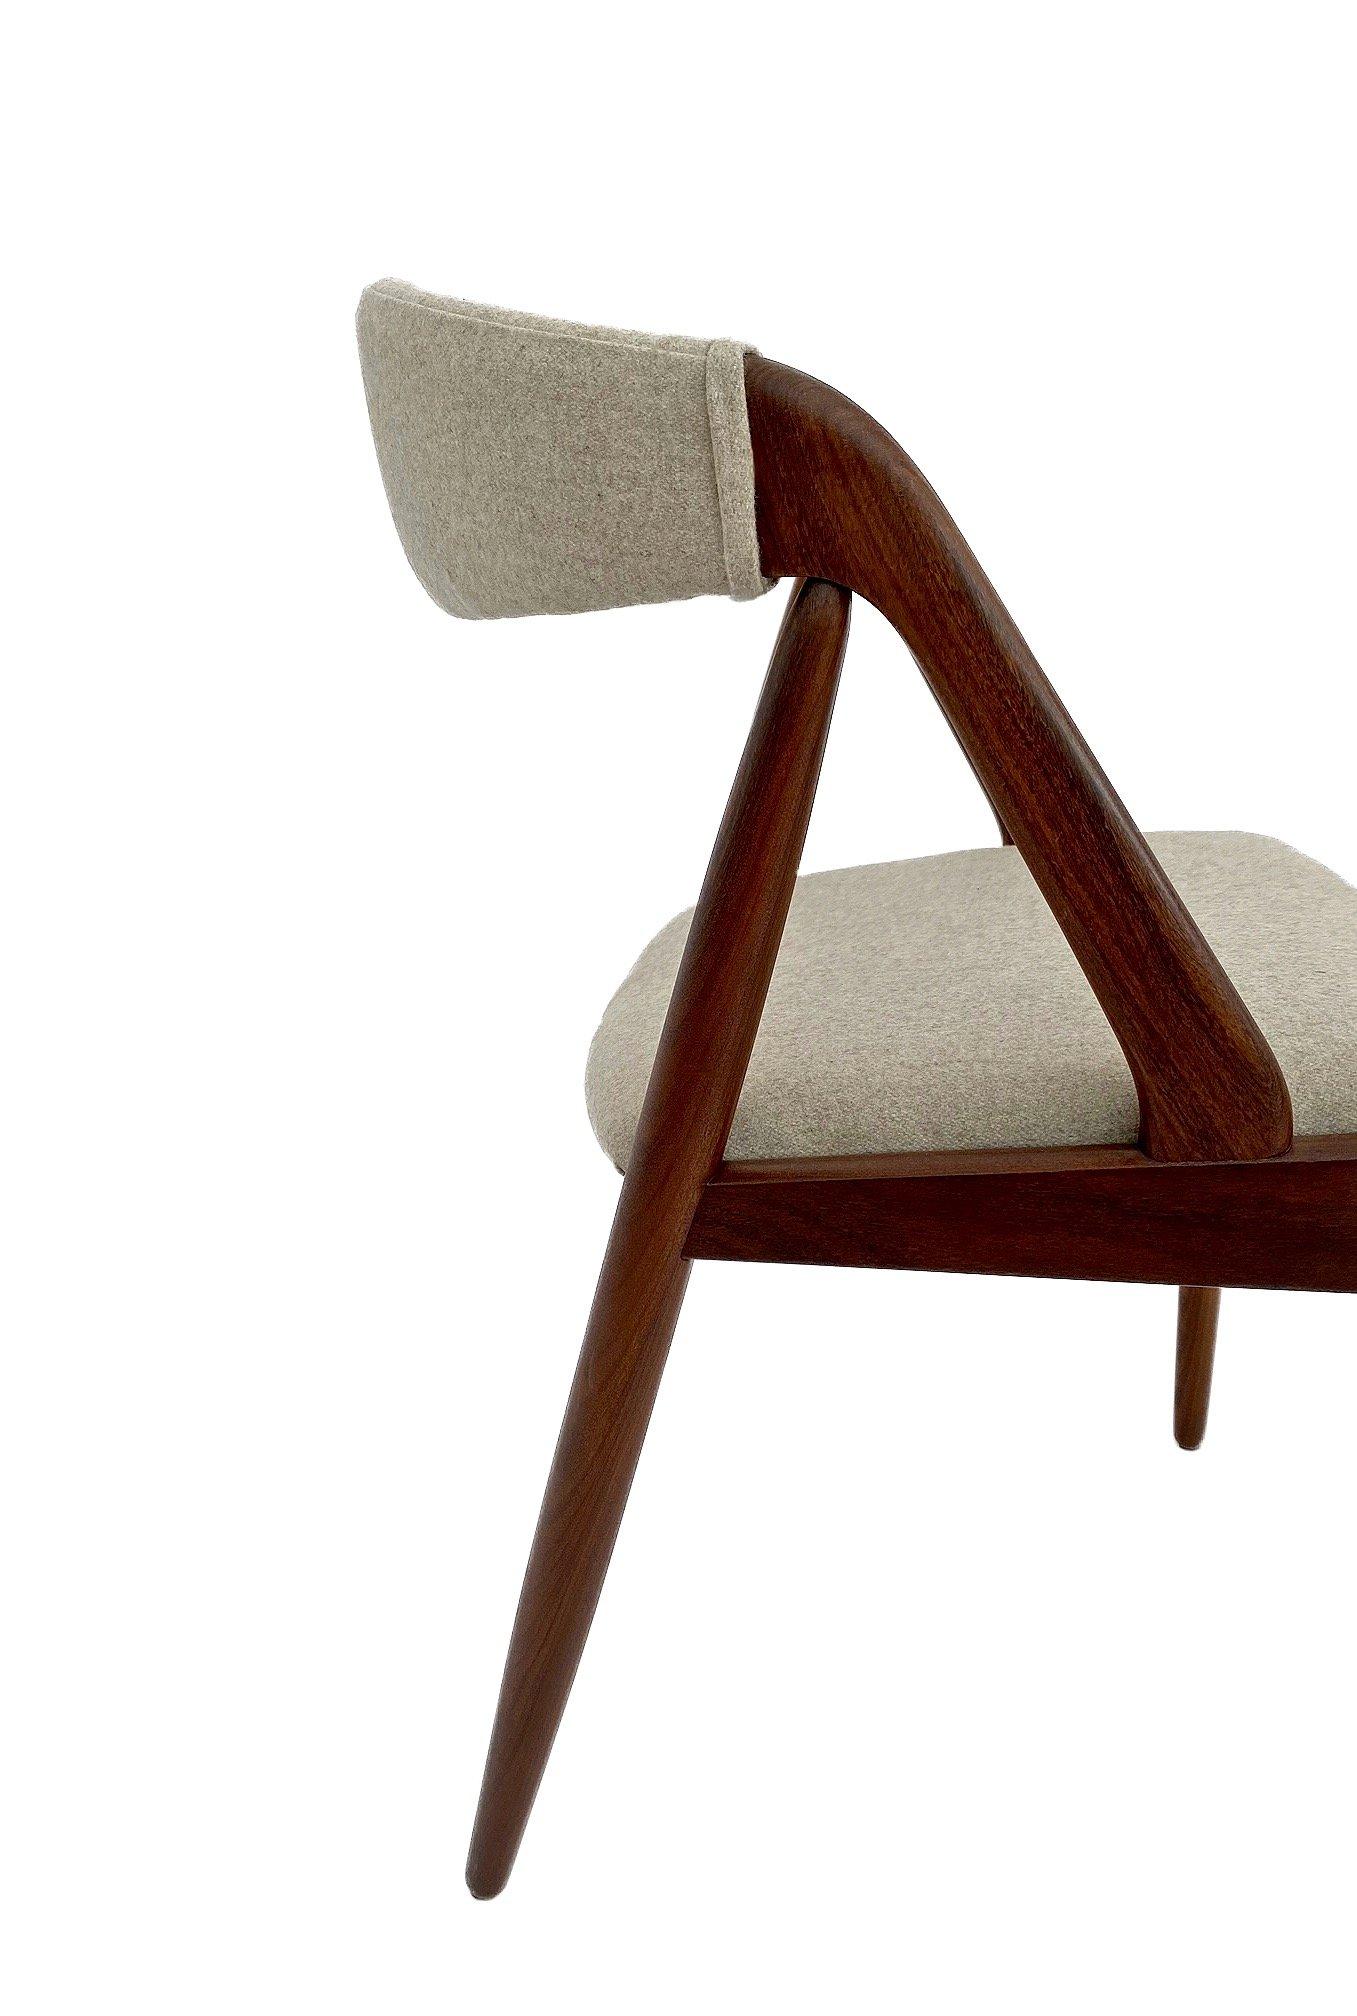 Kai Kristiansen Model 31 for Shou Andersen Teak and Cream Wool Desk Chair 11